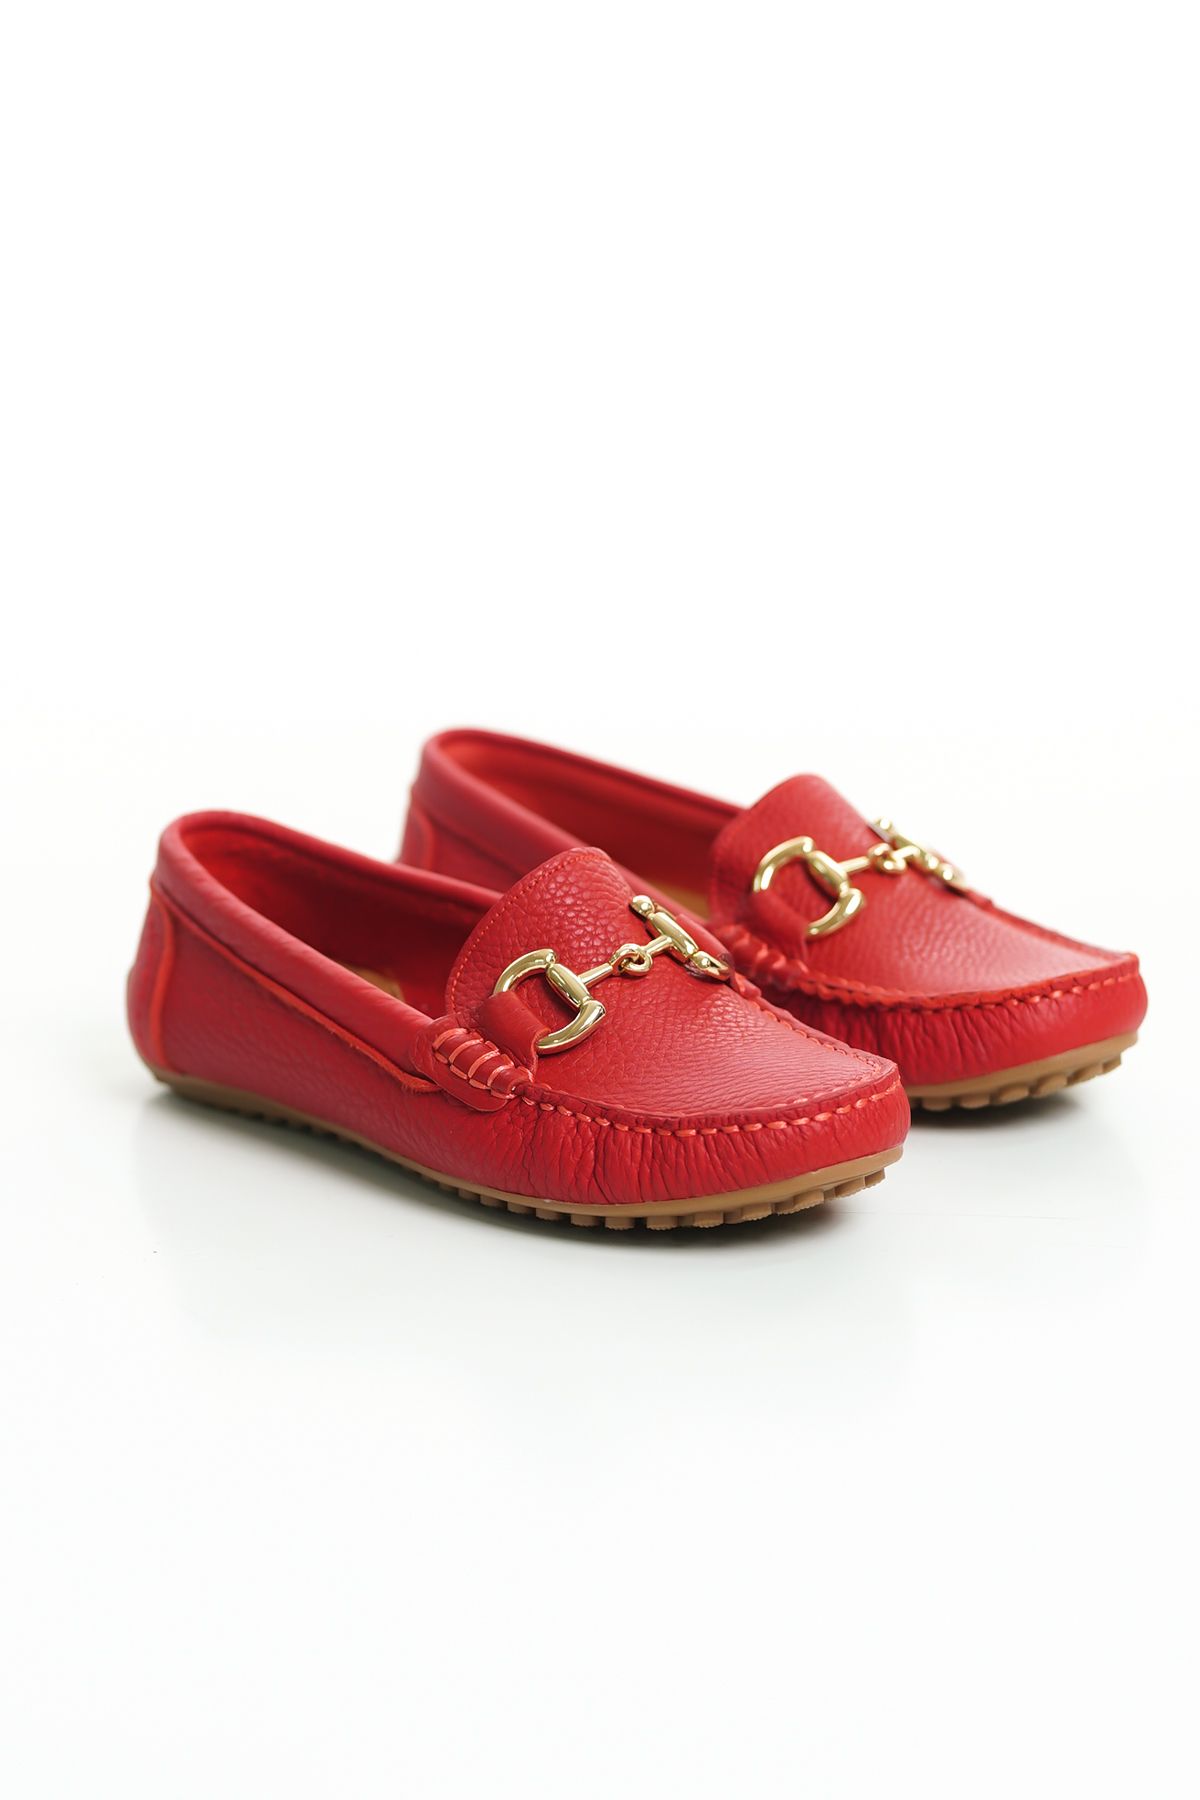 Mubiano 203-kr Hakiki Deri Oval Burunlu Toka Detay Kadın Kırmızı Babet & Loafer Ayakkabı